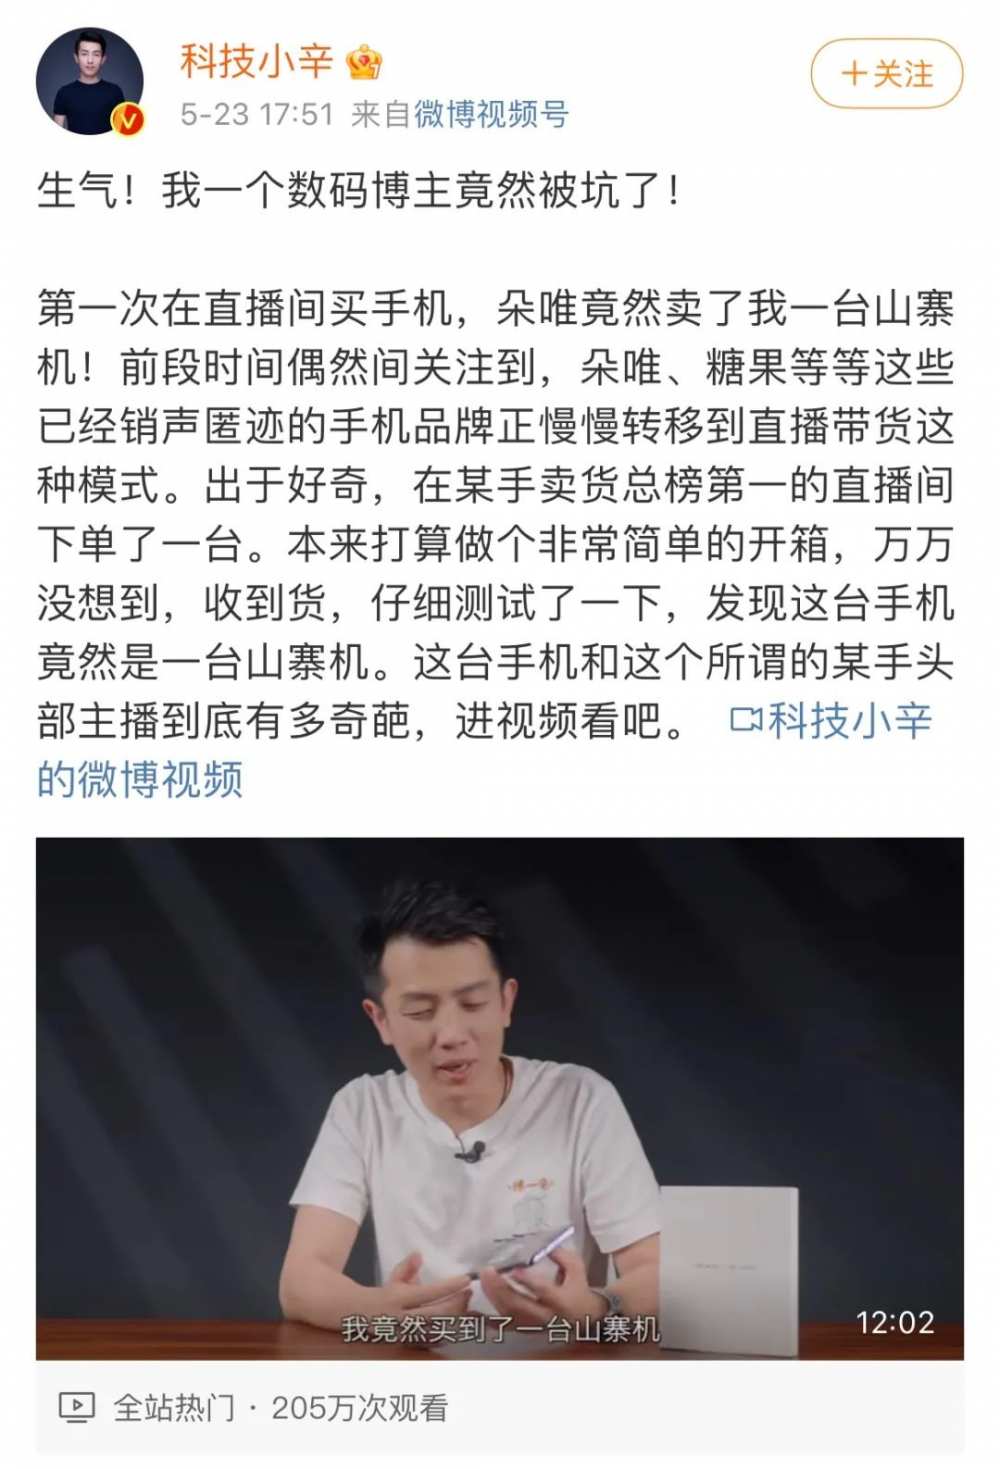 微信圈子将于12月28日停运；<a href='https://www.zhouxiaohui.cn/duanshipin/
' target='_blank'>小红书</a>宣布起诉造谣自媒体，索赔千万元 -第4张图片-周小辉博客